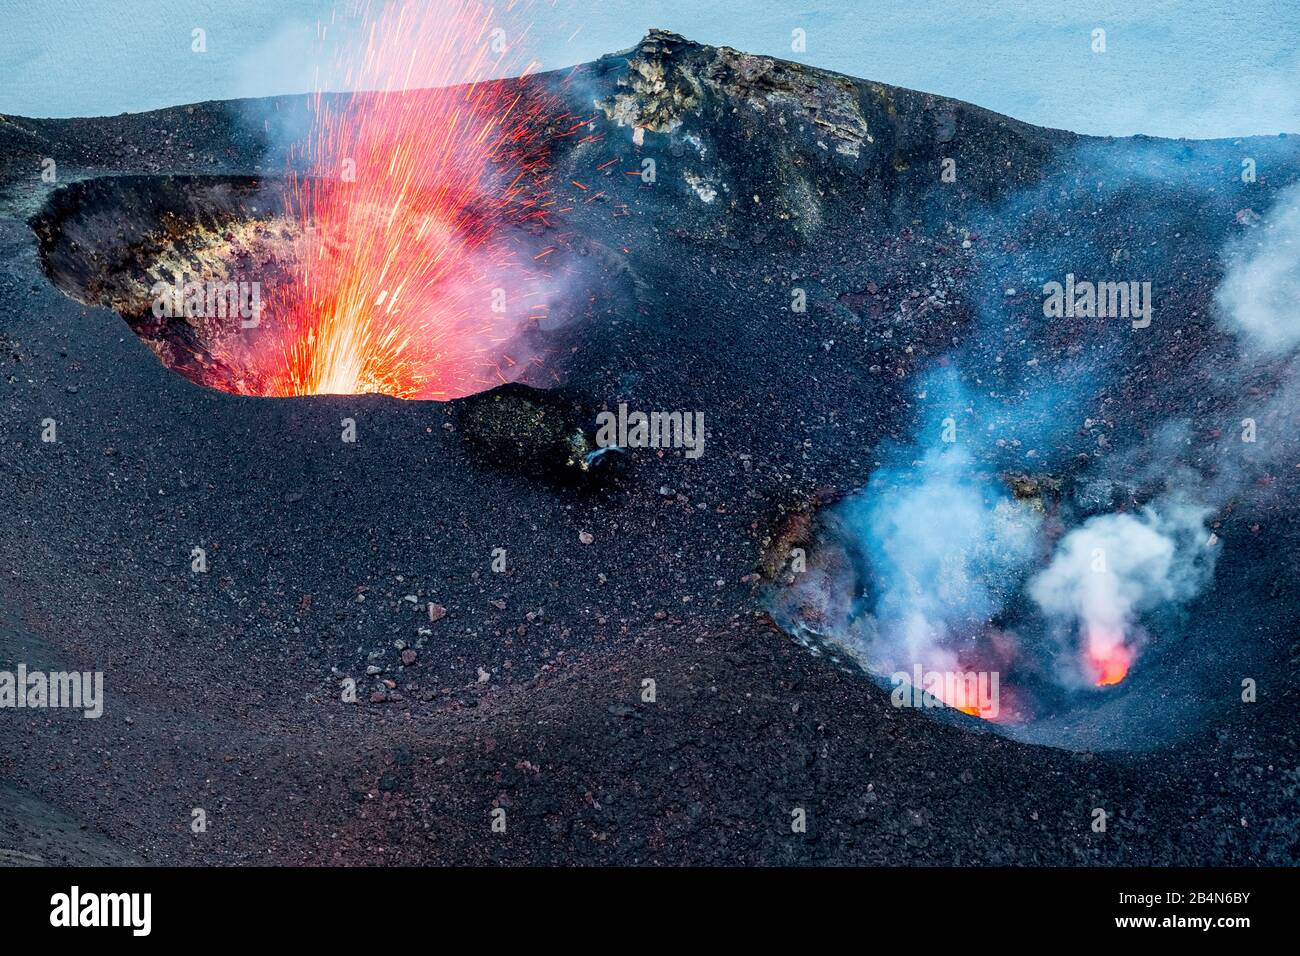 Krater mit Rauchwolke und Feuer des Vulkans Stromboli, Lipari, Äolische Inseln, Äolische Inseln, Tyrrhenisches Meer, Süditalien, Europa, Sizilien, Italien Stockfoto